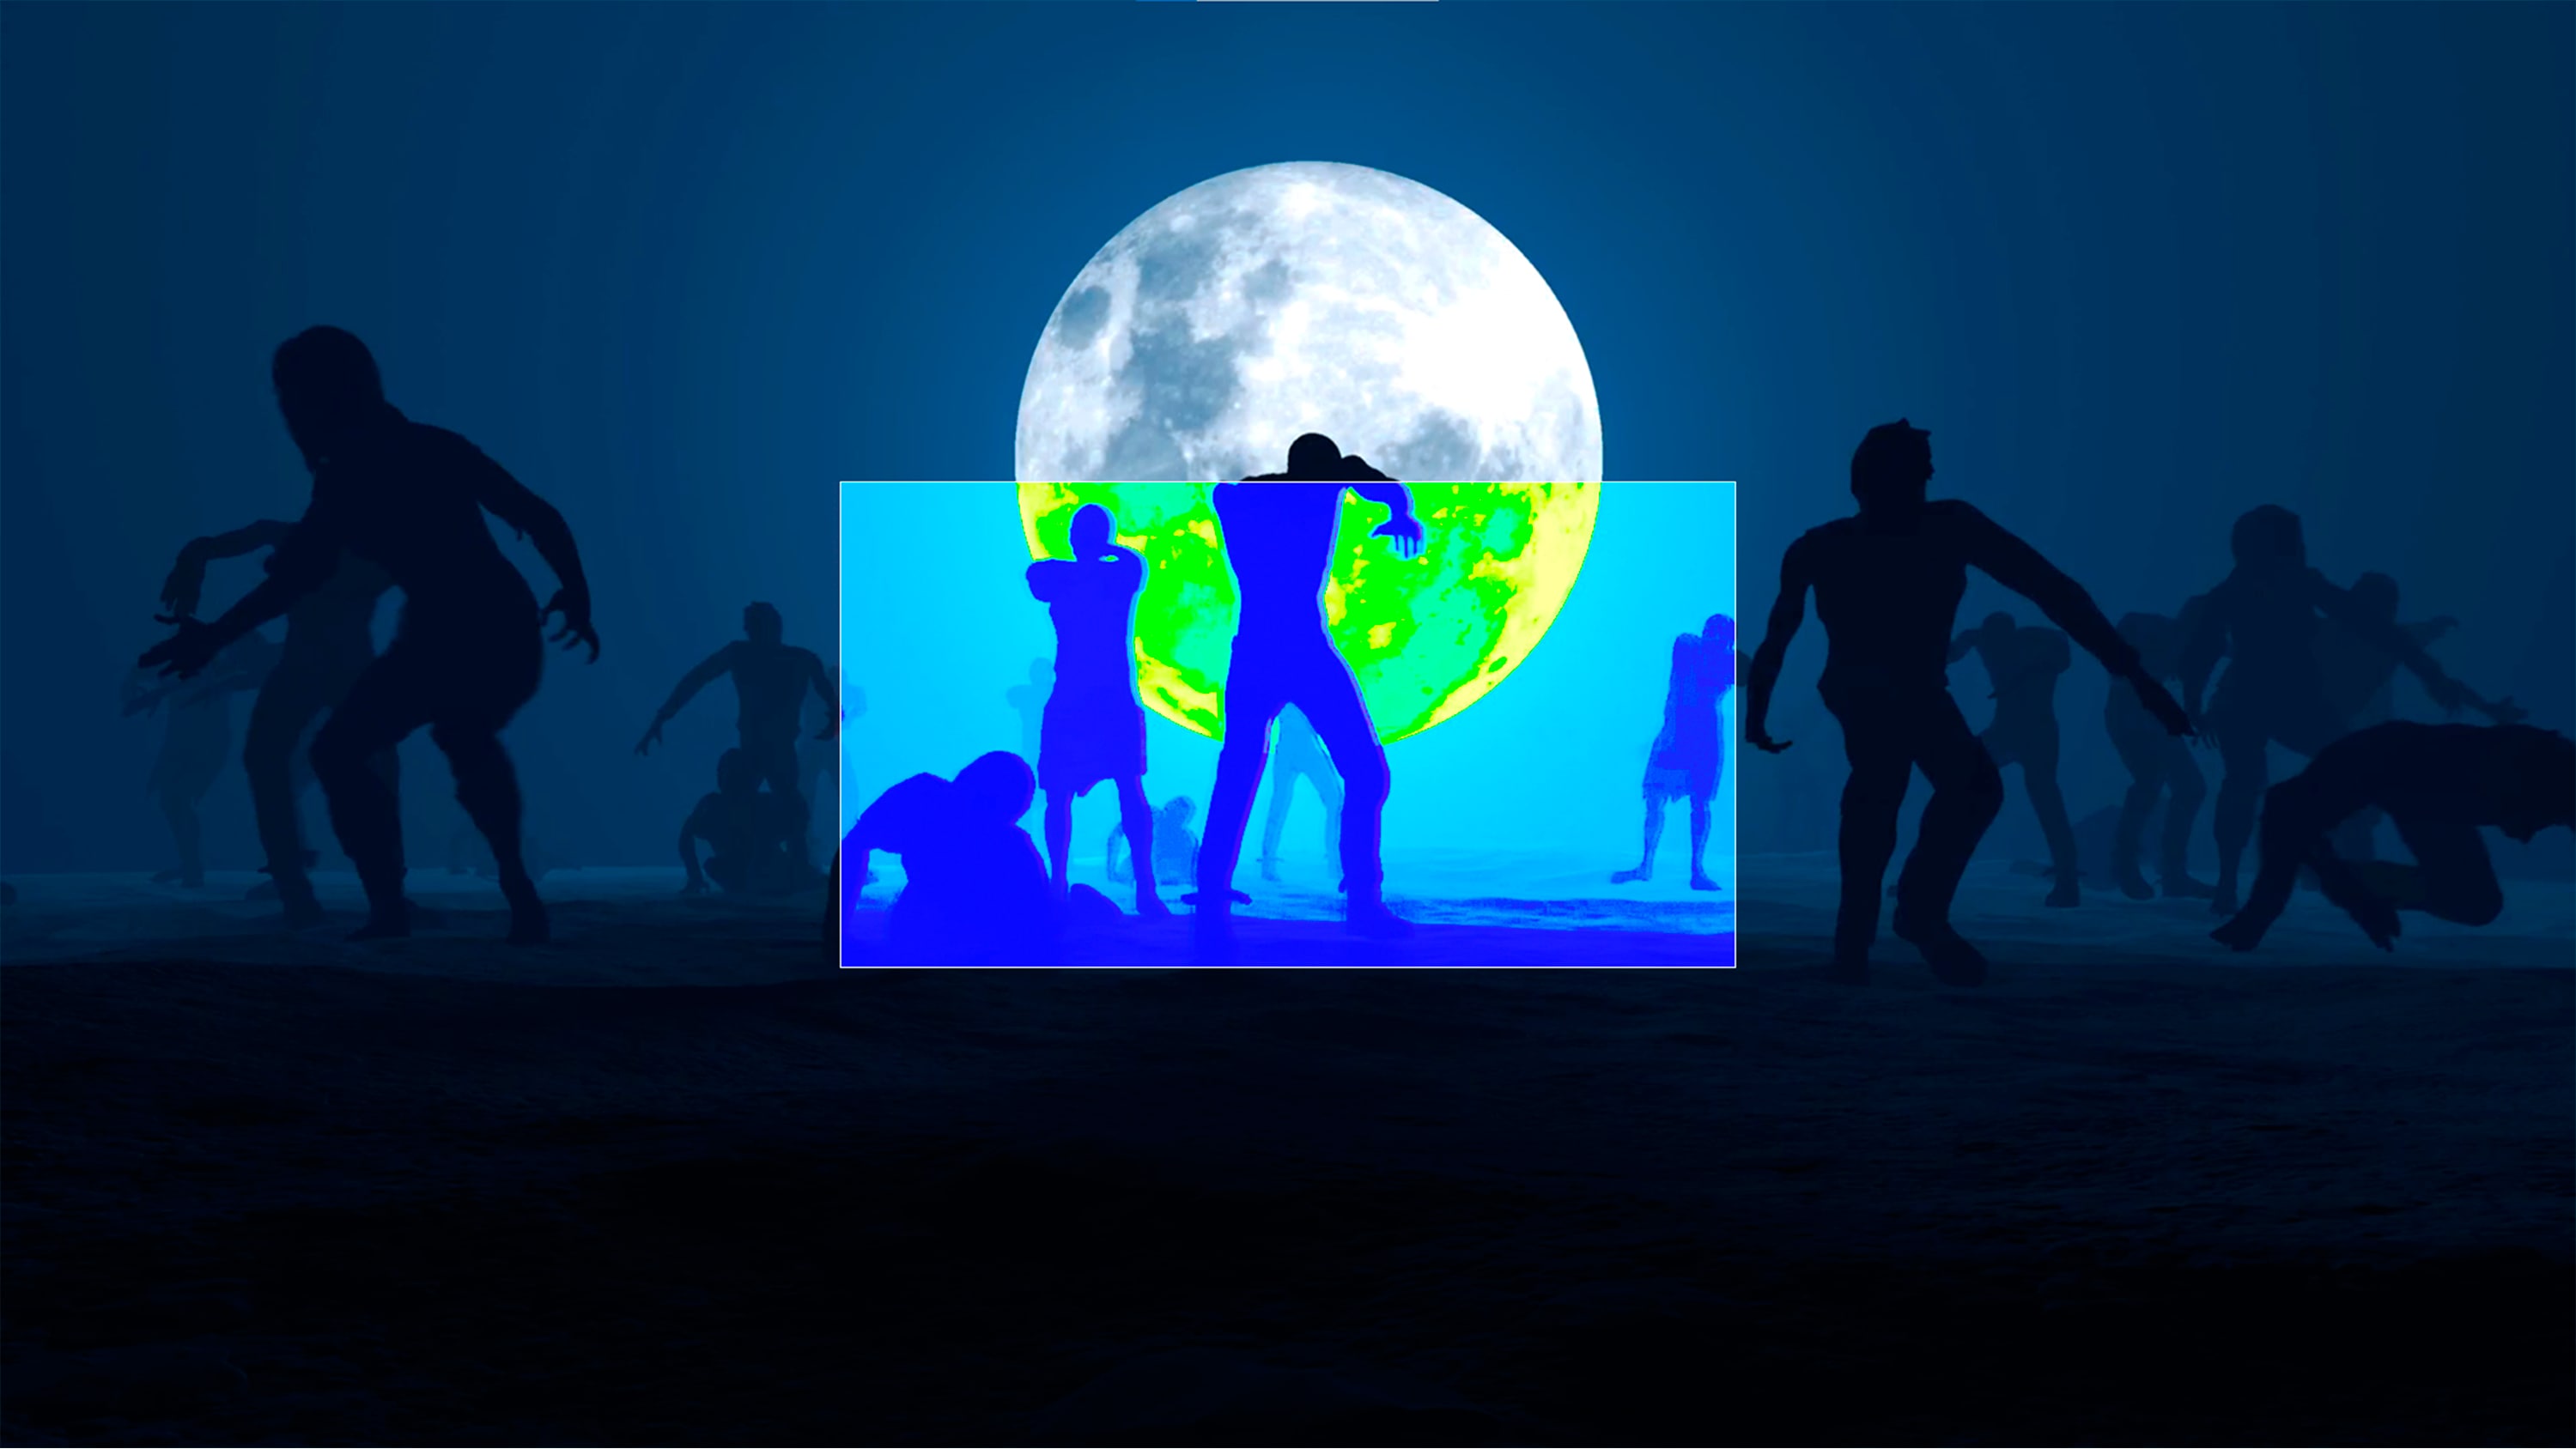 Image de jeu avec des zombies face à la pleine lune.